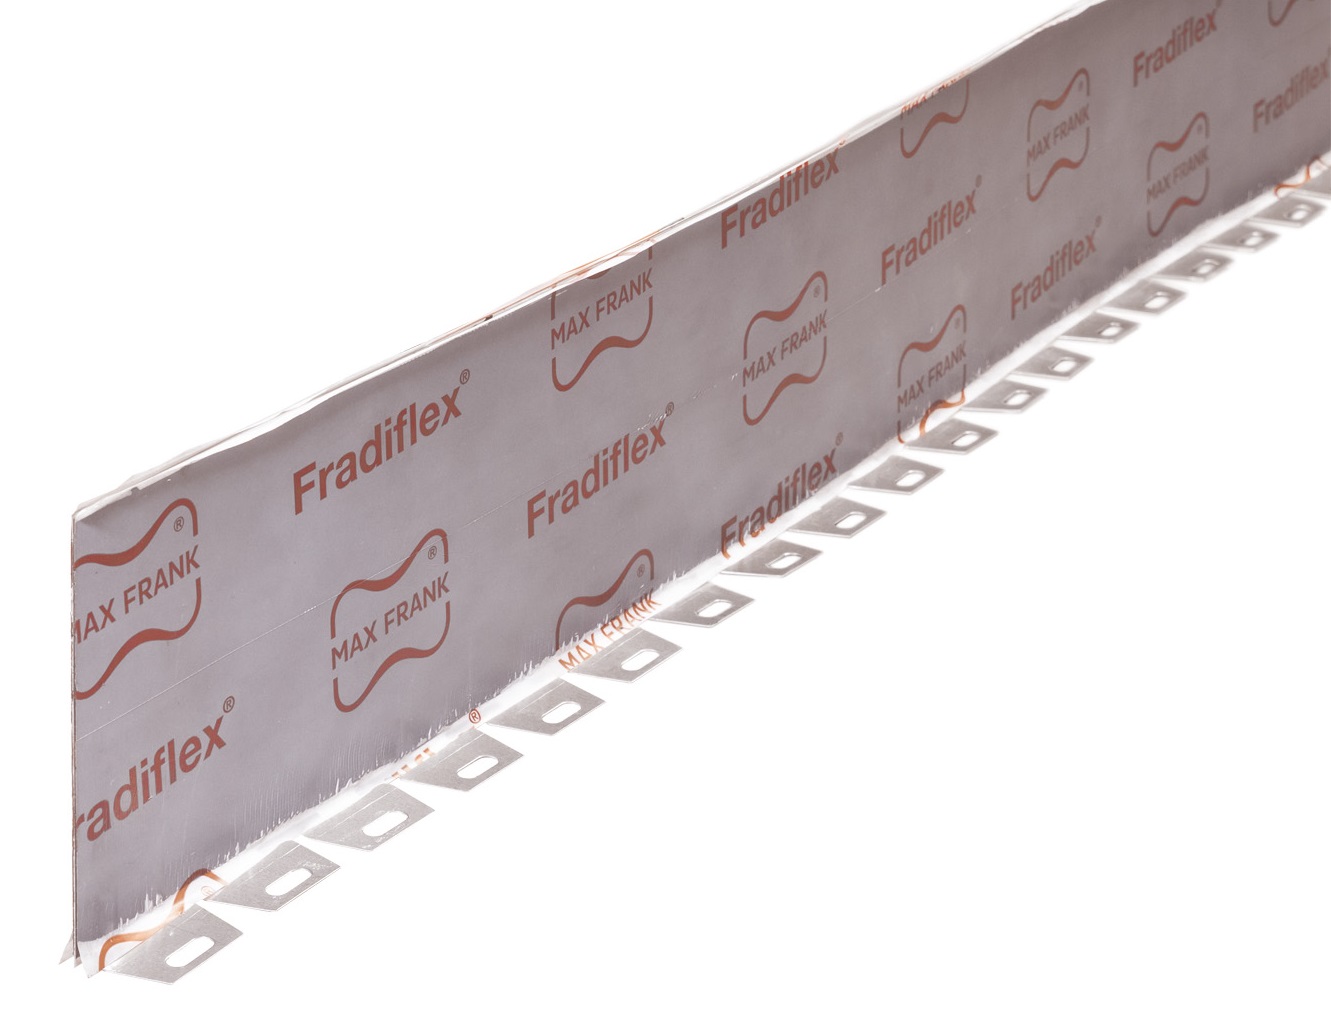 FRANK Fradiflex Premium h 150 mm - kovový těsnící pás - rovný